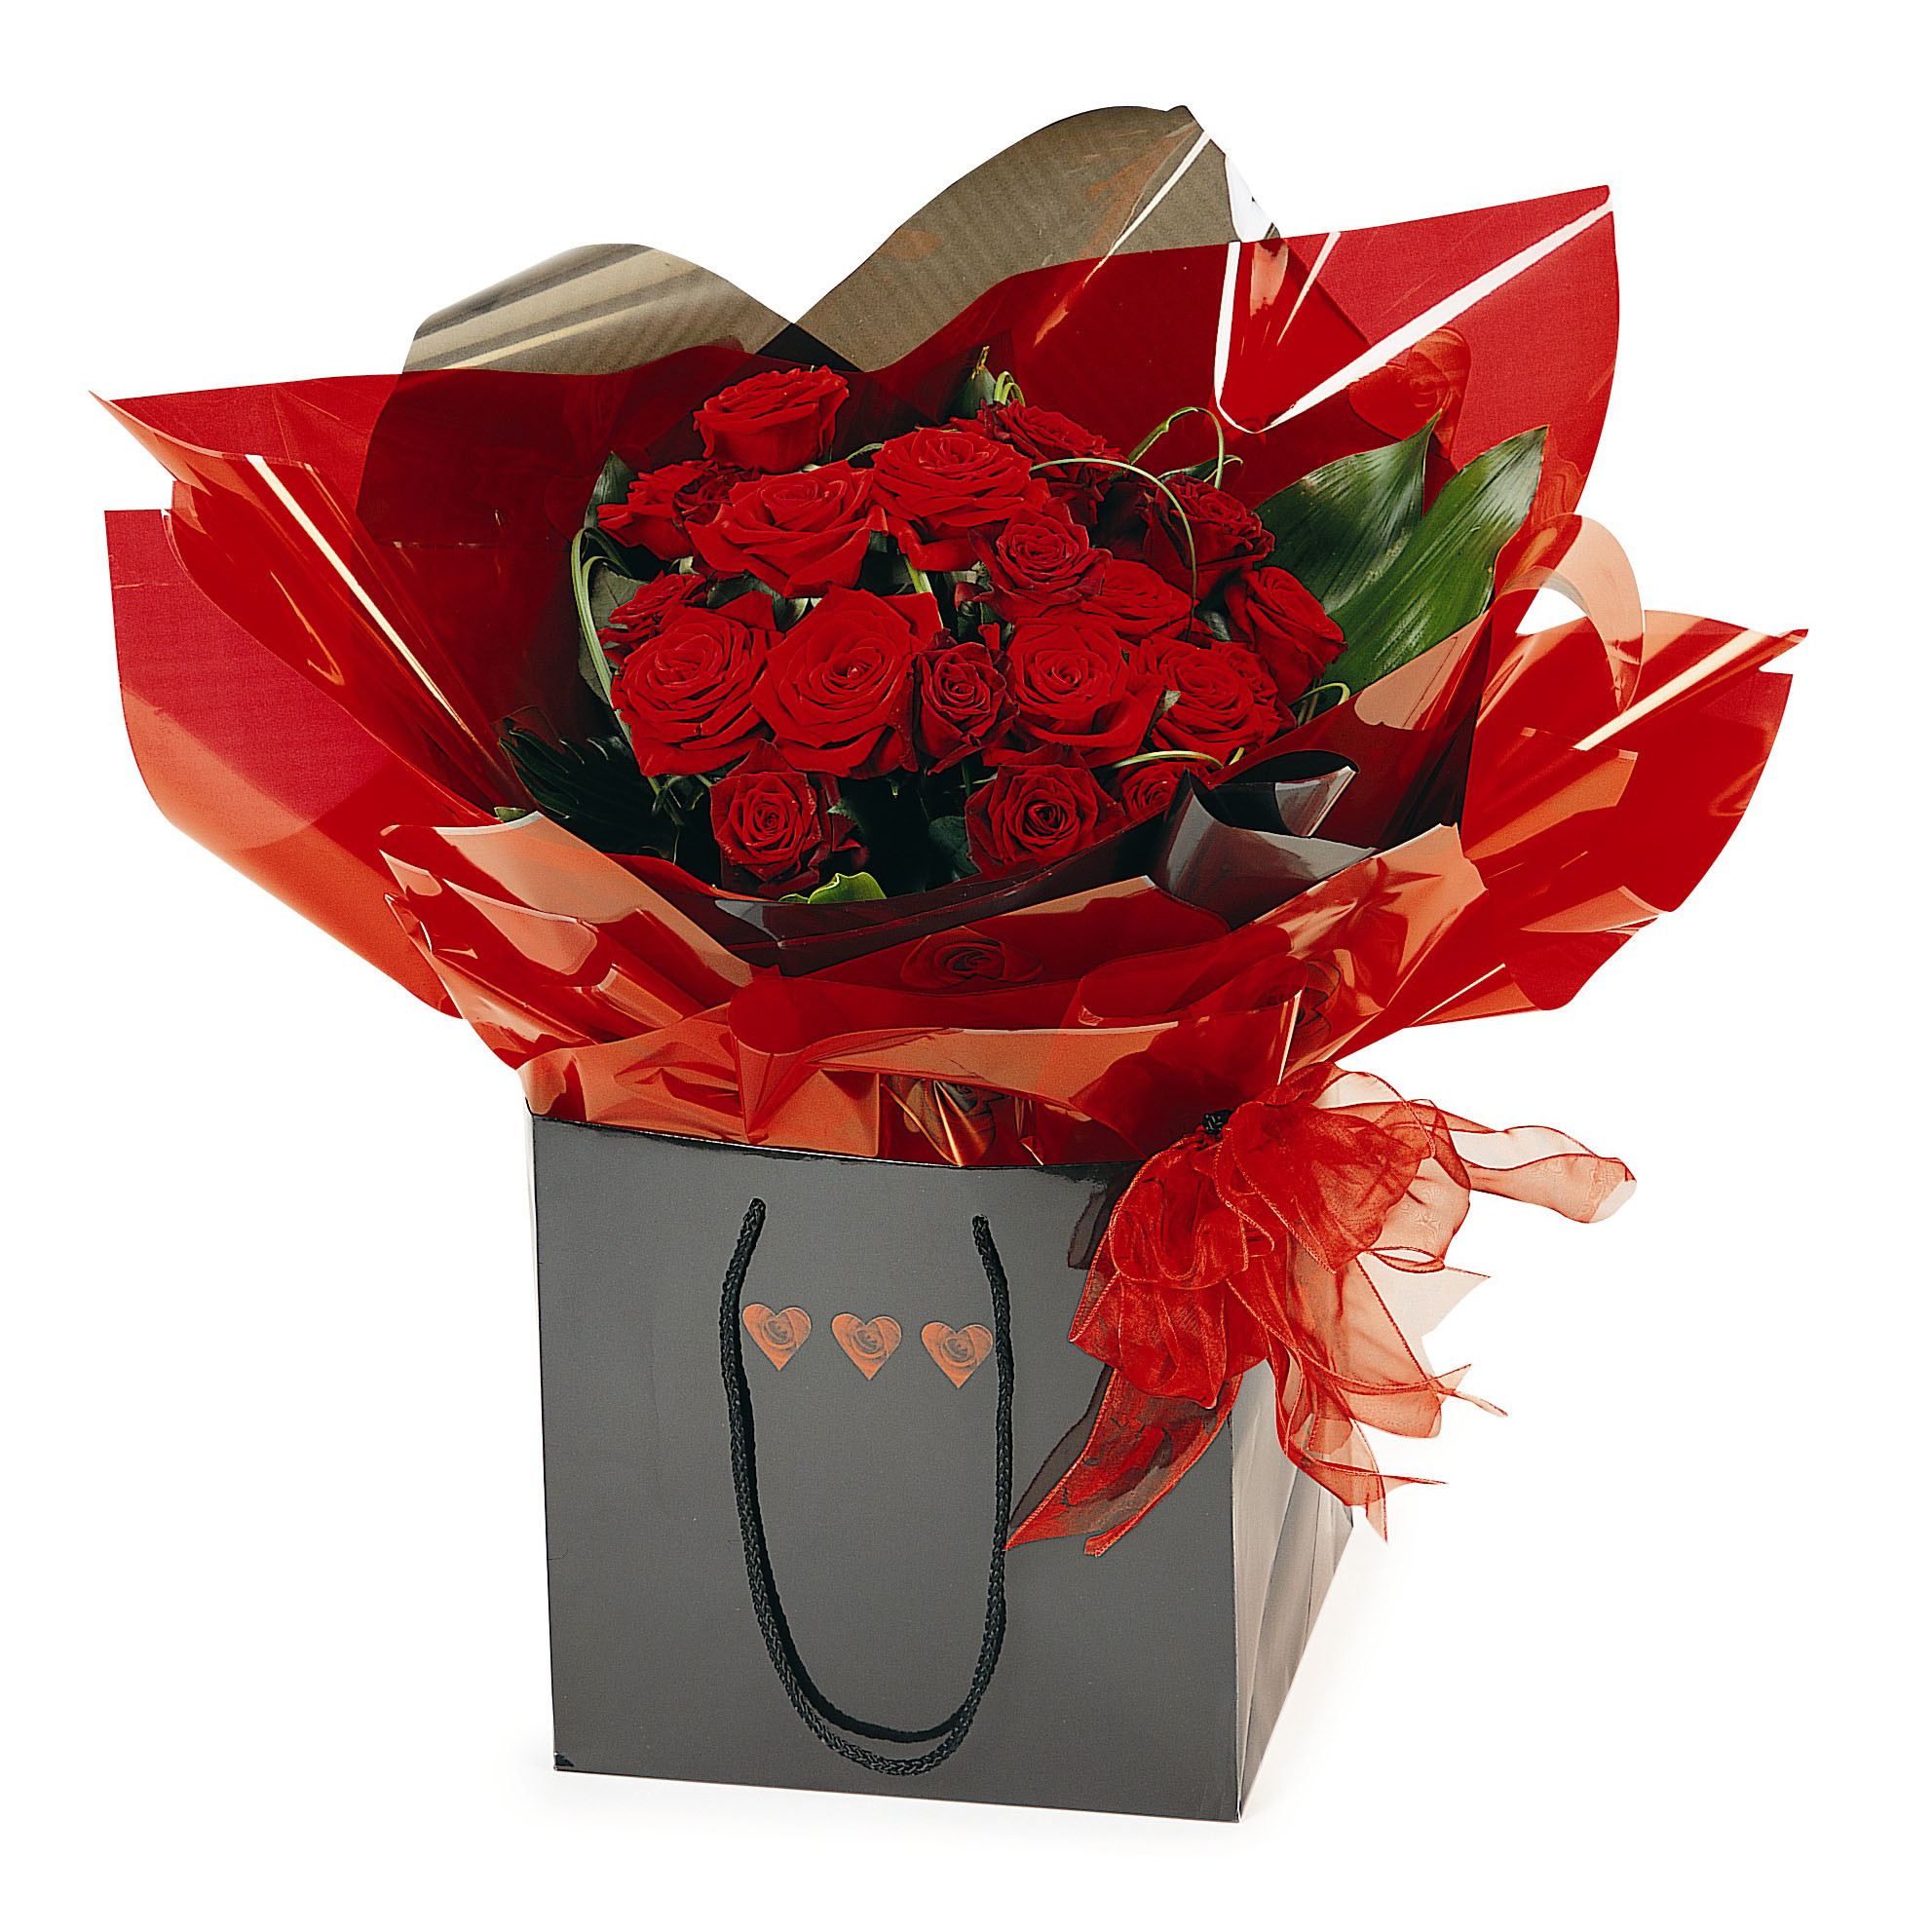 1983x1983 ... latest-2013-Happy-valentine's-lover's-day-roses-flowers-  PF_12_00000000B393_VA0325_W1_PF PF_12_00000000R202_VA1527_W2_PF ...